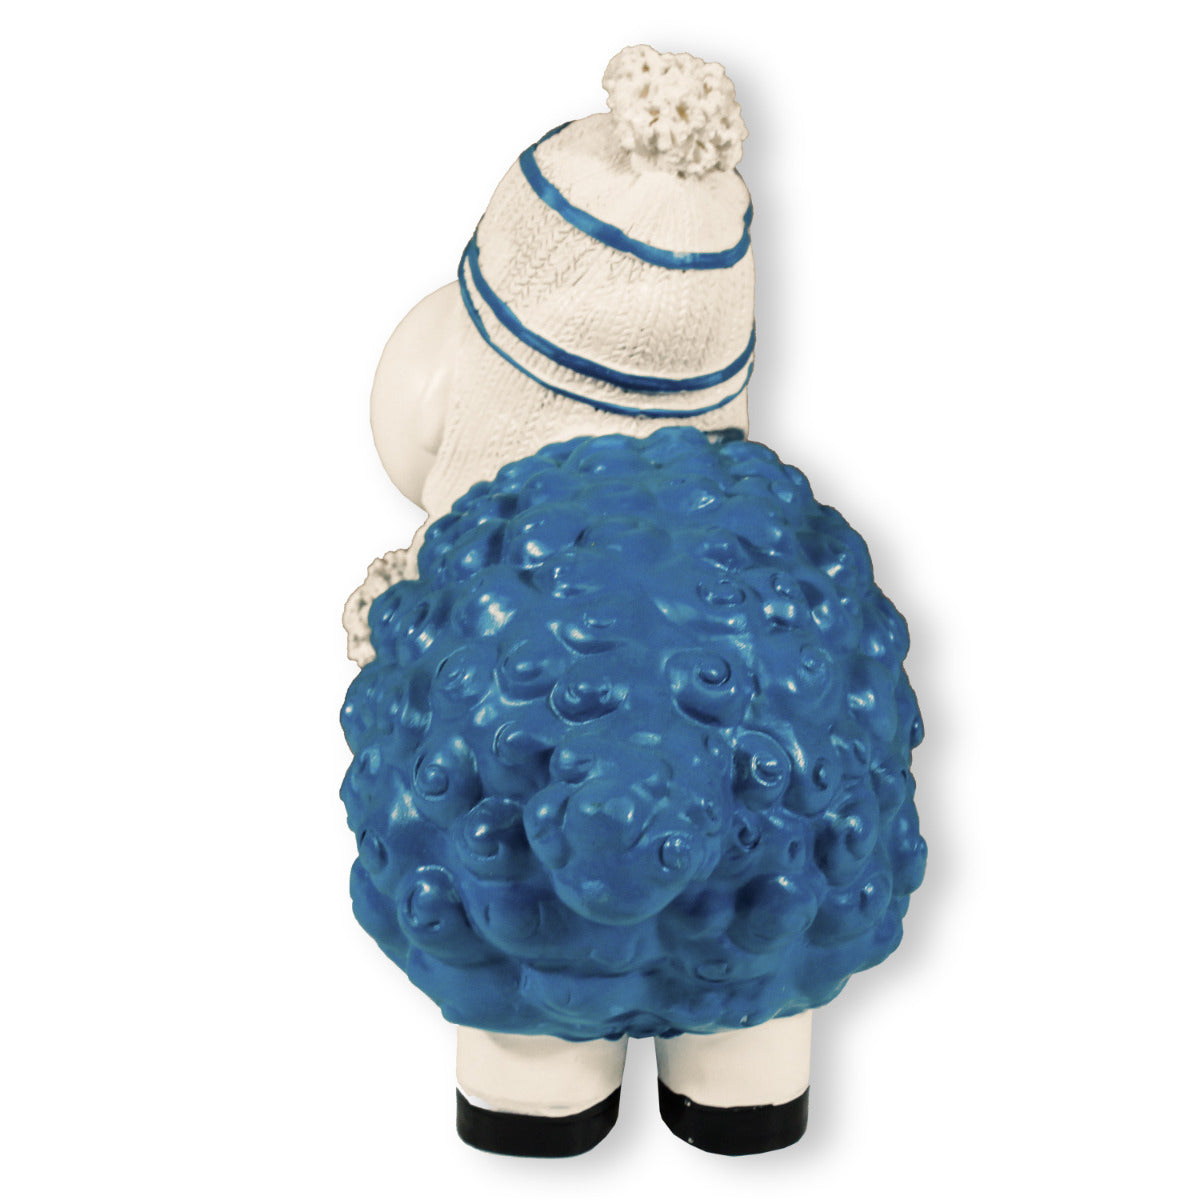 Buntes Deko Schaf blau mit Mütze Gartenfigur Schaf Dekofigur Schaf lustige Schafe